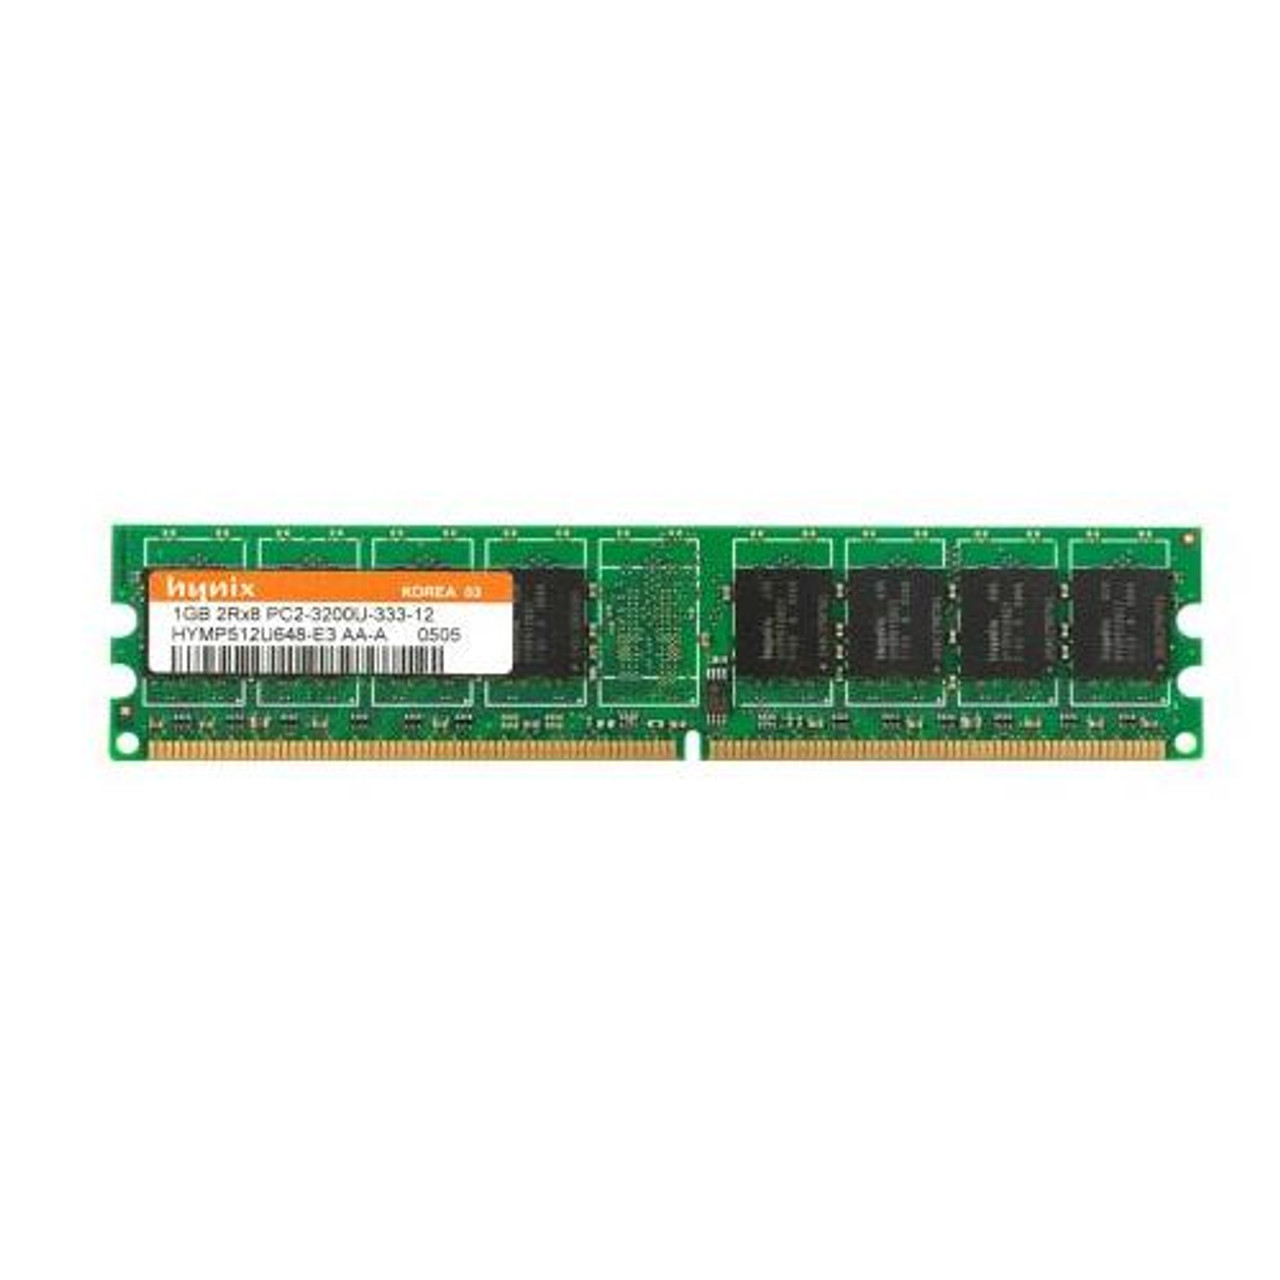 HYMP512U648-E3 Hynix DDR2 Desktop Memory